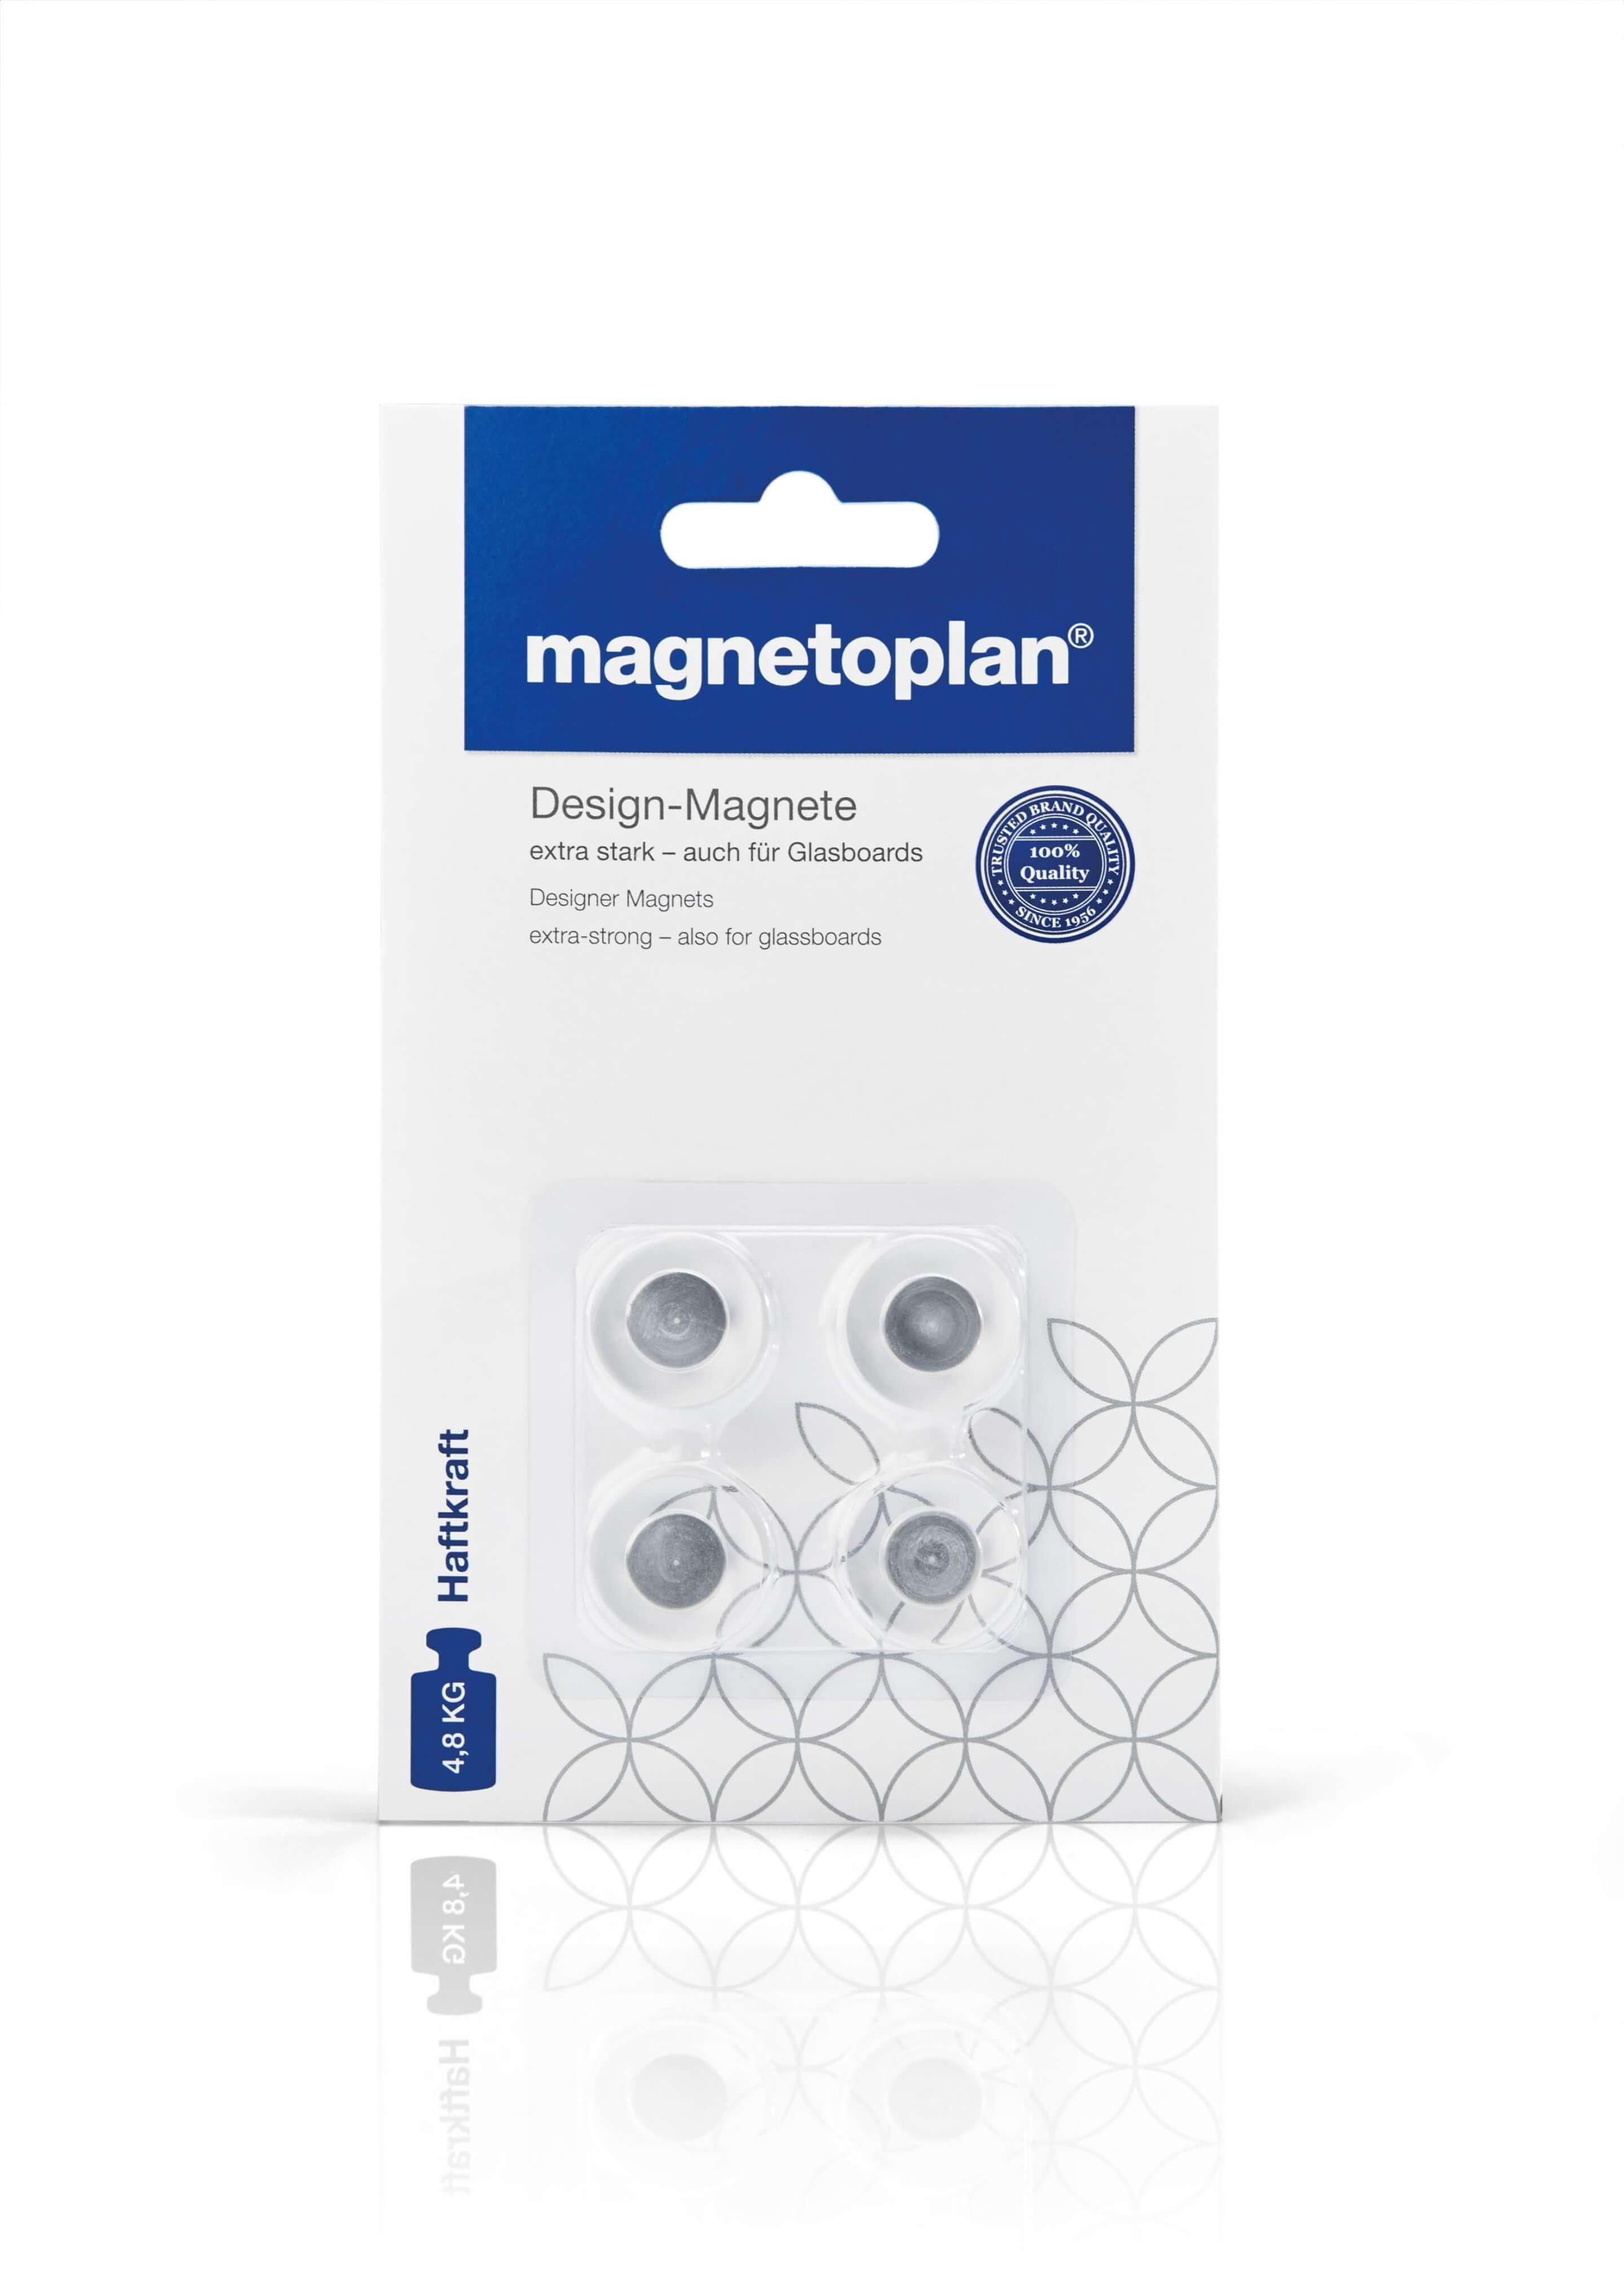 Magnetoplan Innovative Design Magnet, 4pcs/pack (COP 1681020)